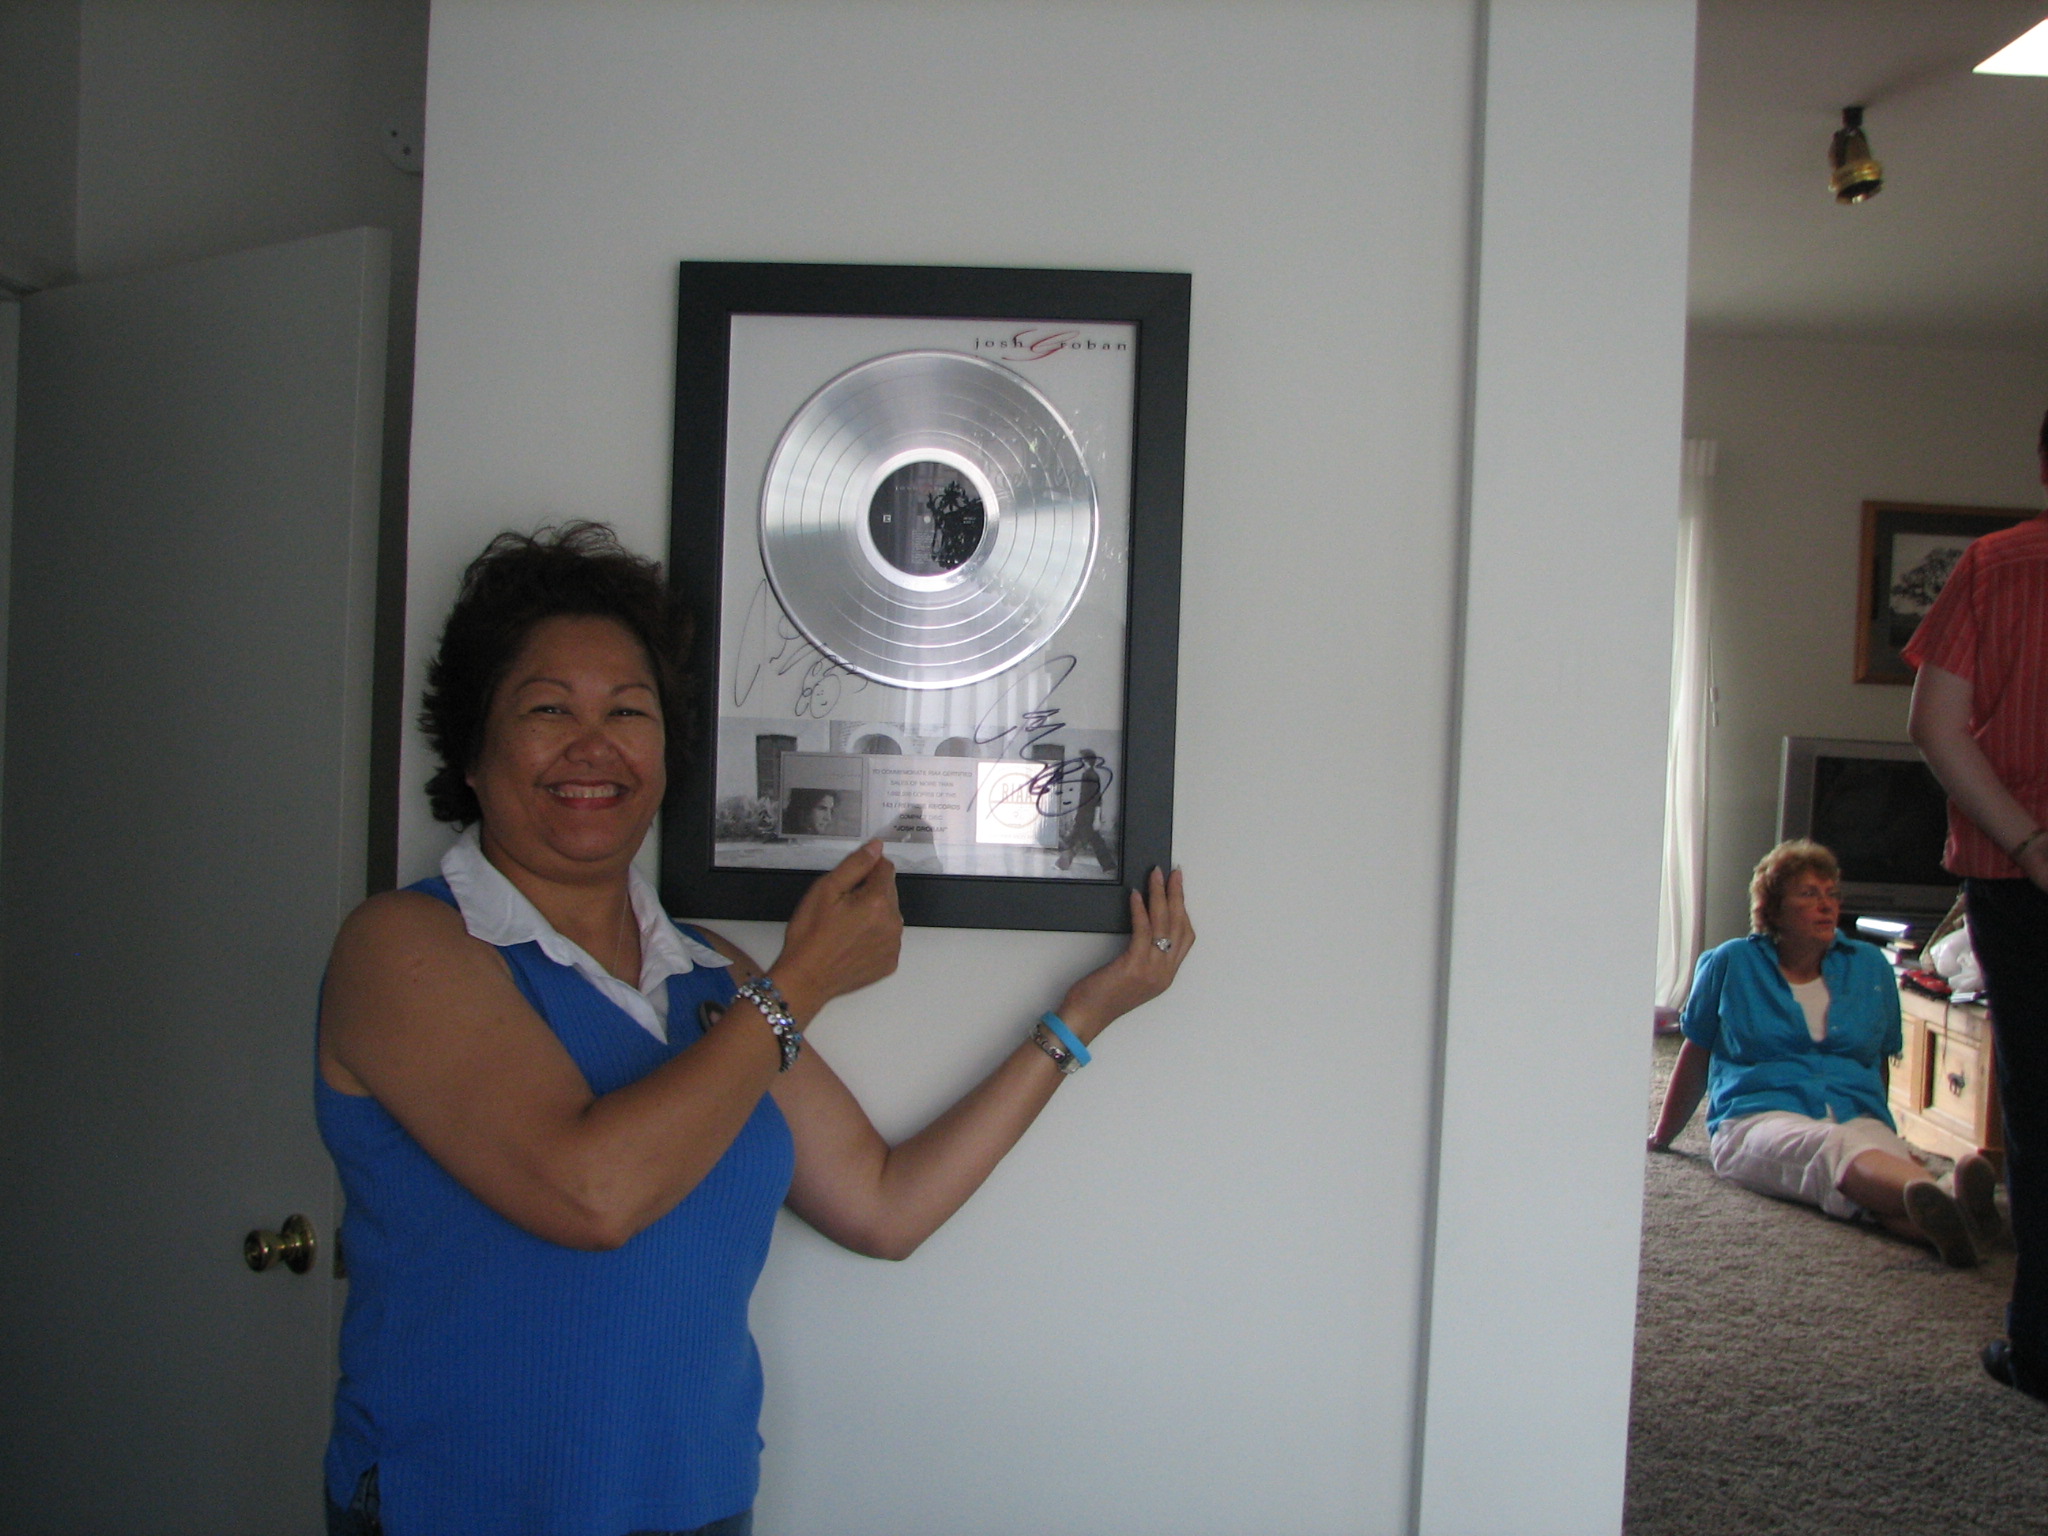 Josh's Platinum record